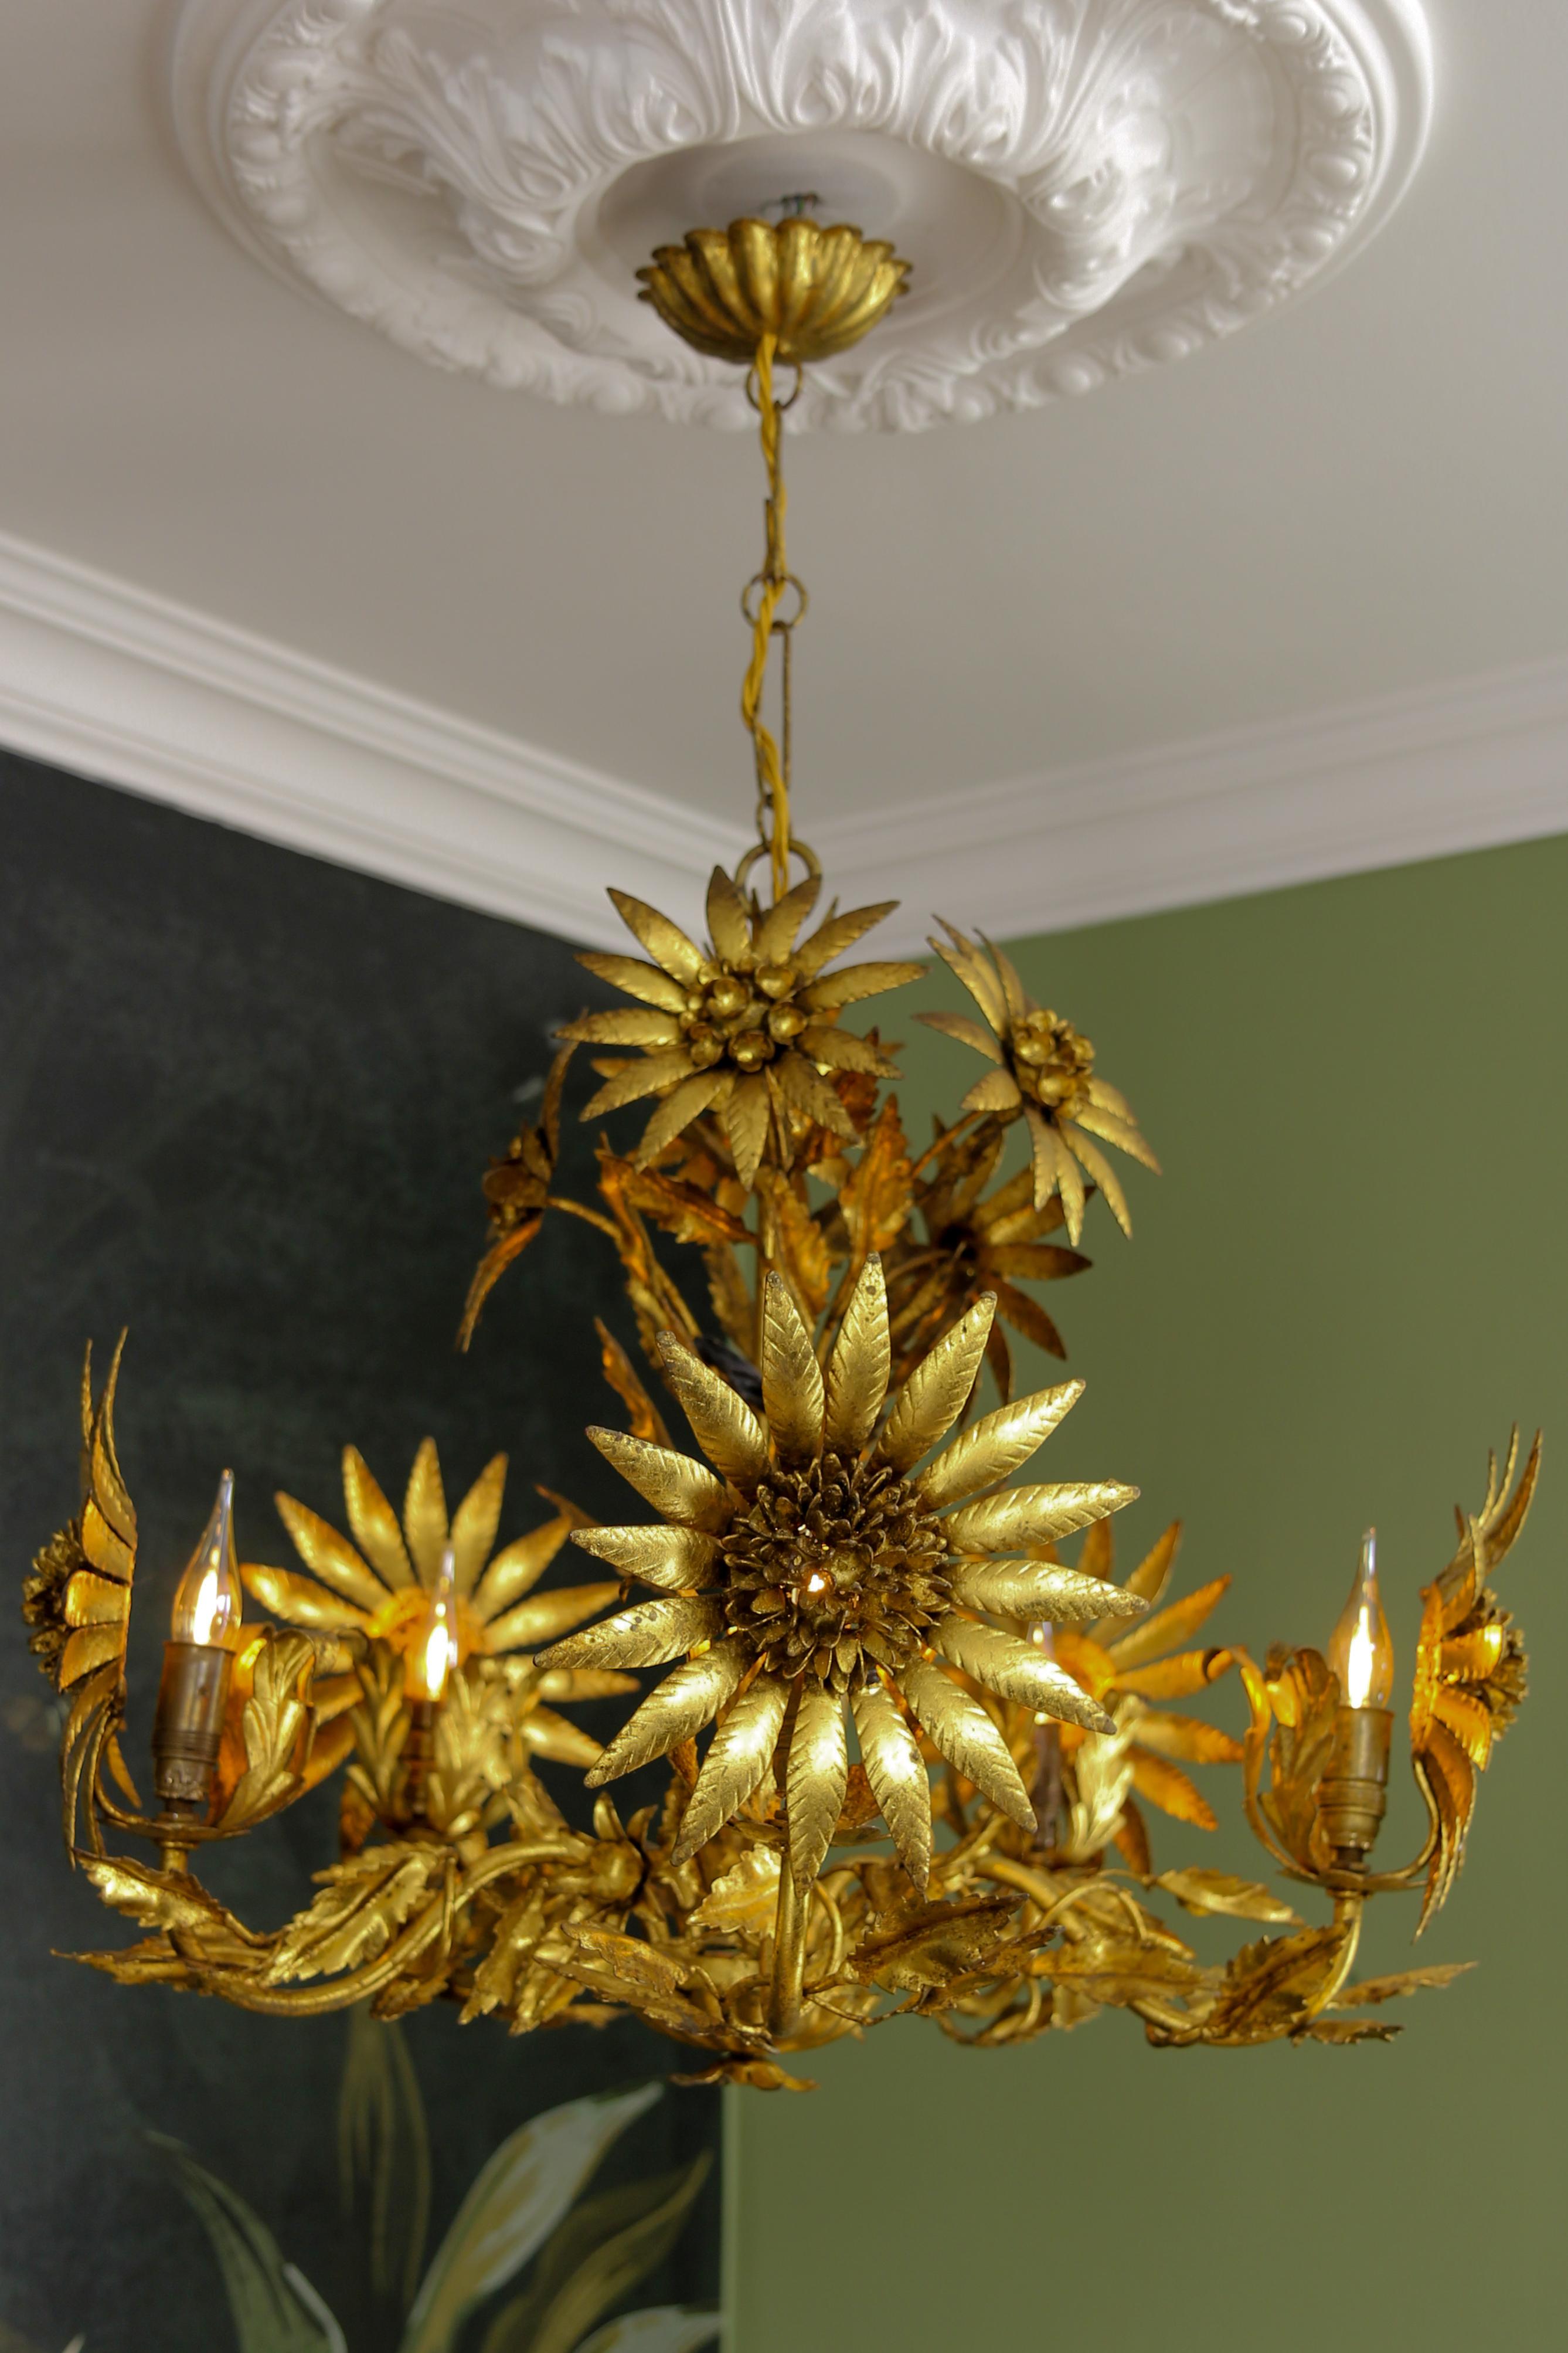 Lustre à cinq lumières en métal doré de style Hollywood Regency, attribué à Hans Kögl, vers les années 1950.
Ce lustre exceptionnel et rare est fait de métal doré et est orné de grandes fleurs, de petites fleurs et de feuilles magnifiquement